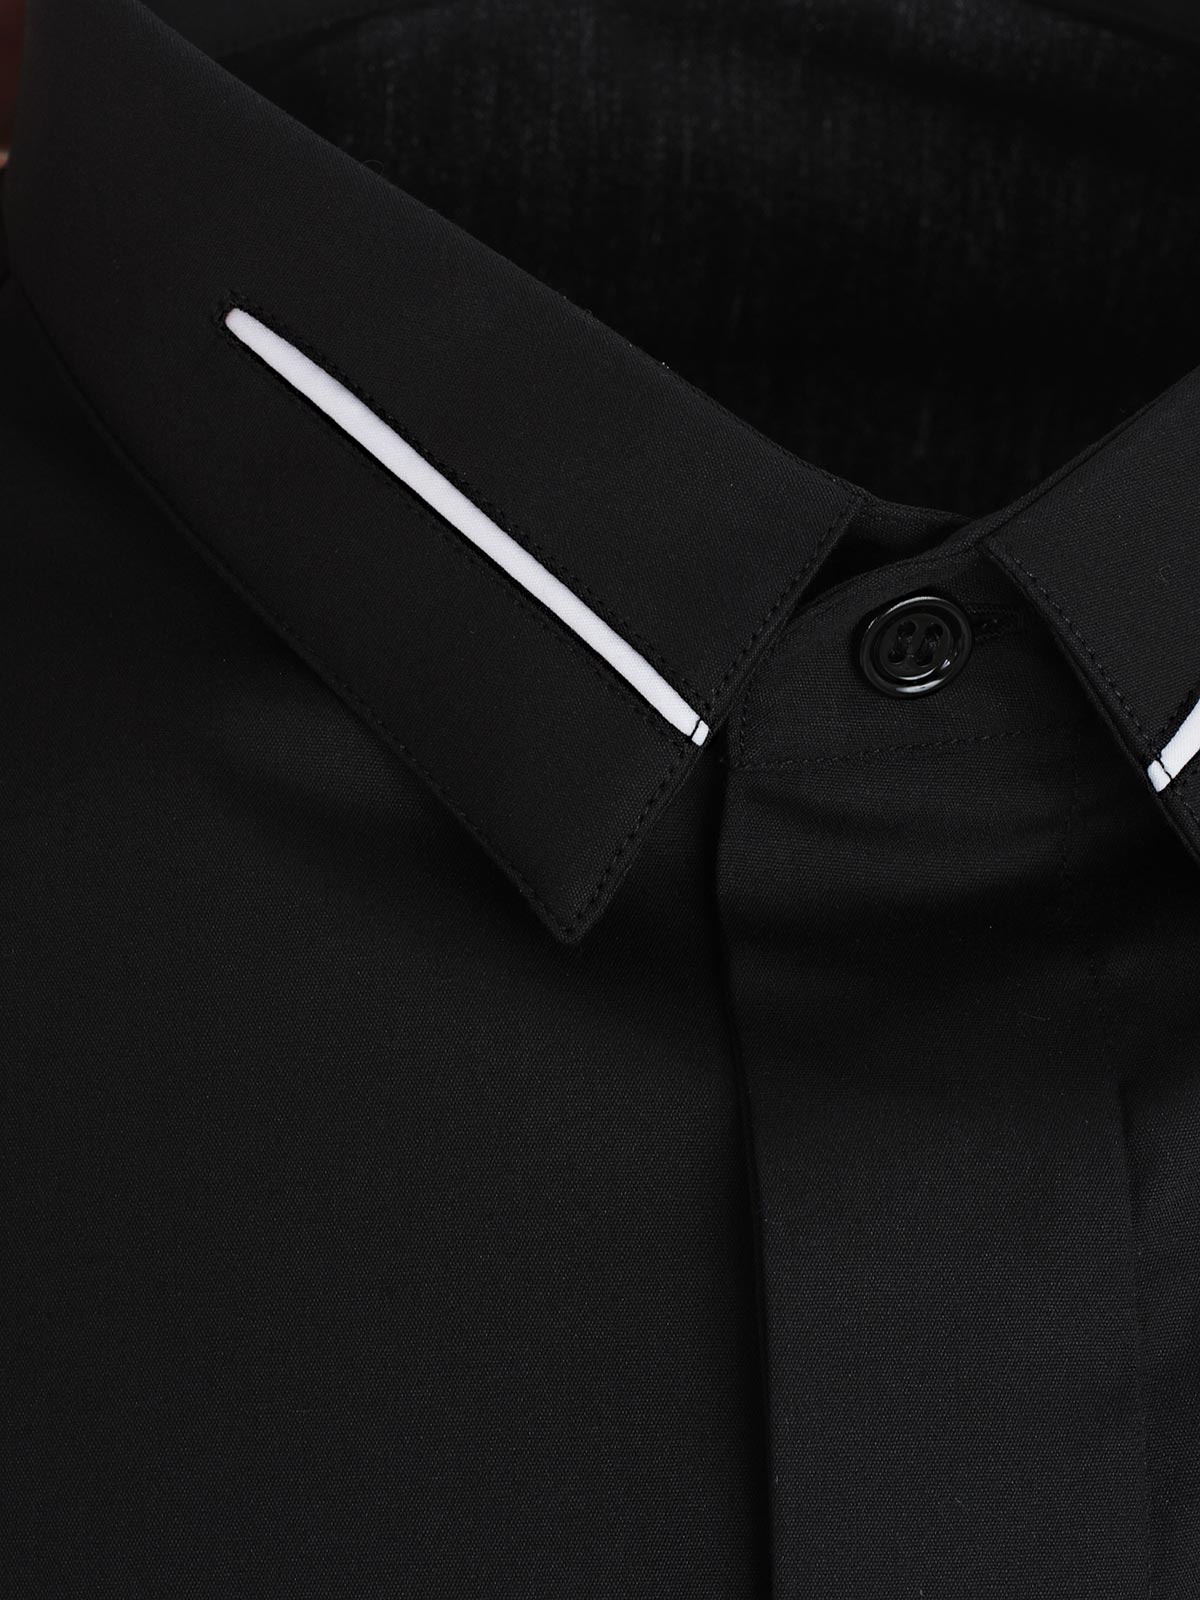 Dior 蜜蜂刺绣衬衫 In Black | ModeSens